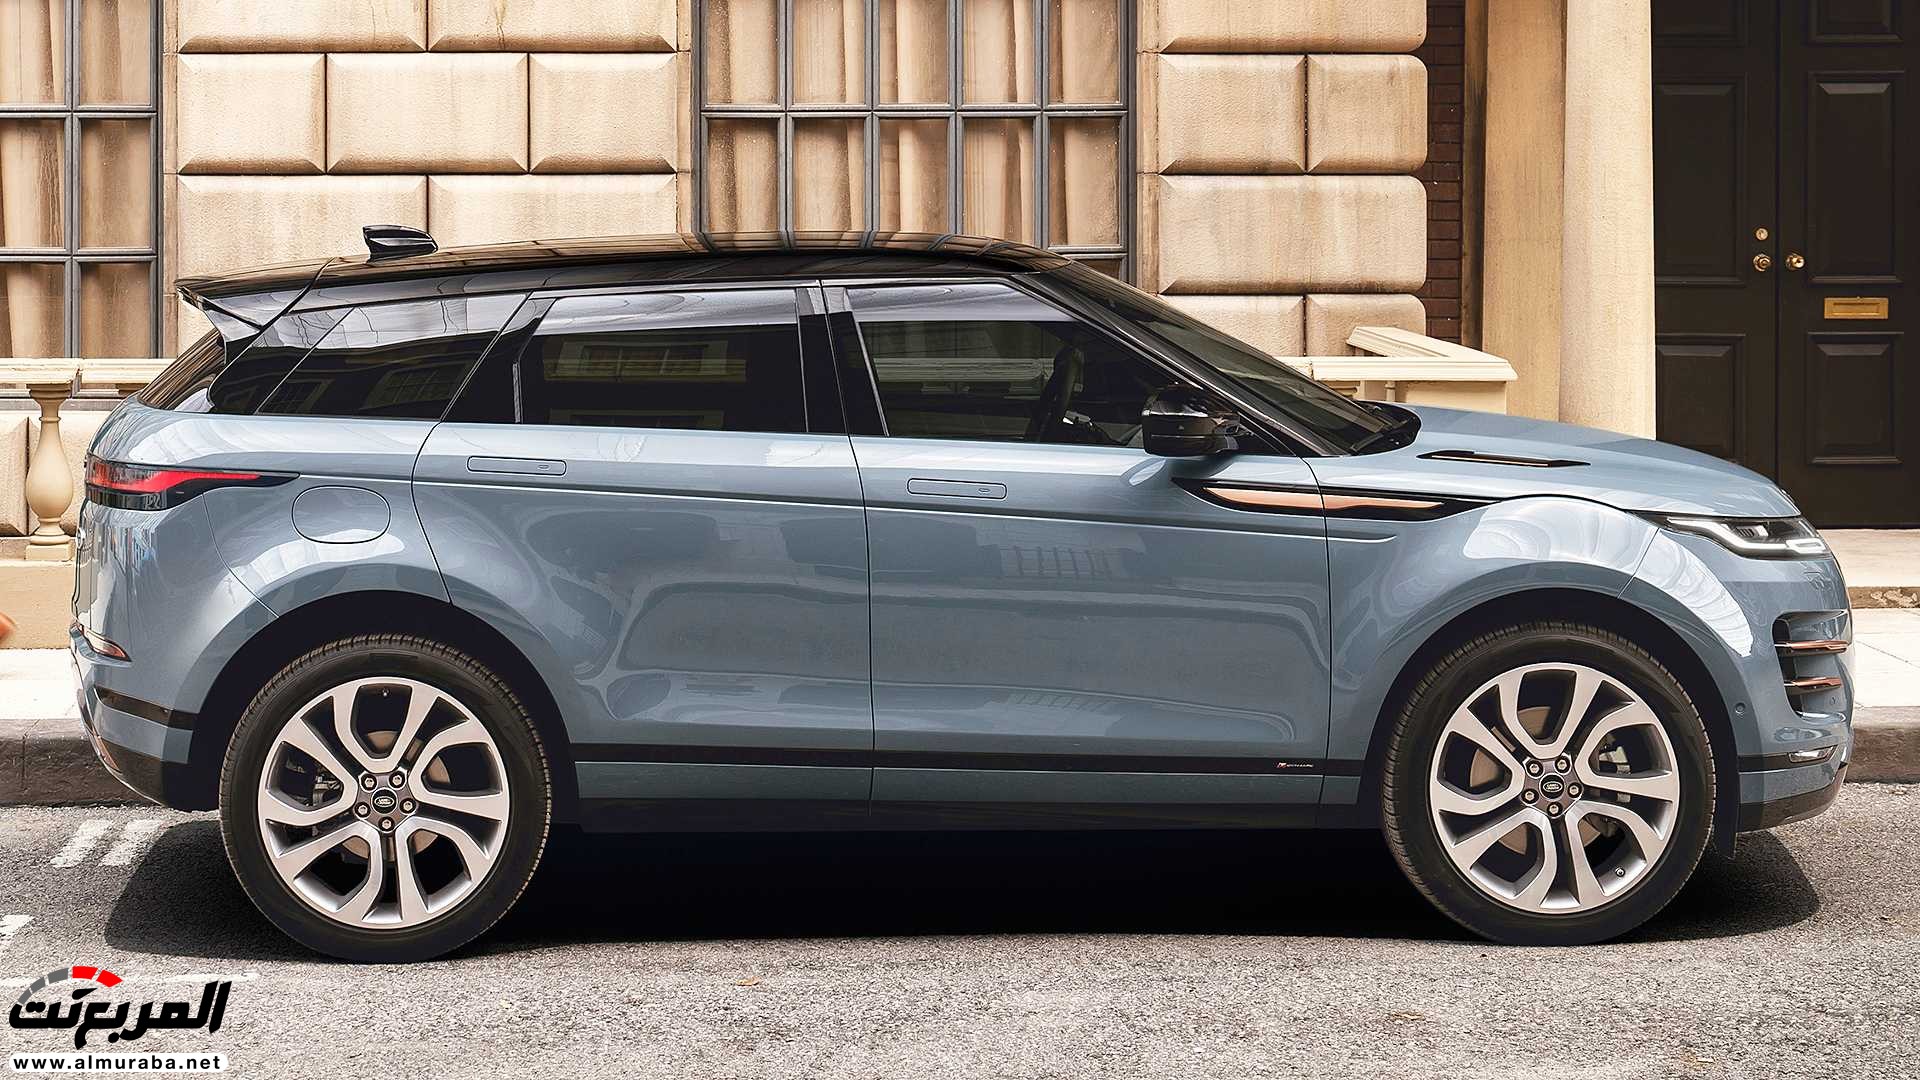 اهم 7 معلومات عن رنج روفر ايفوك 2020 الجديدة كلياً Range Rover Evoque 104